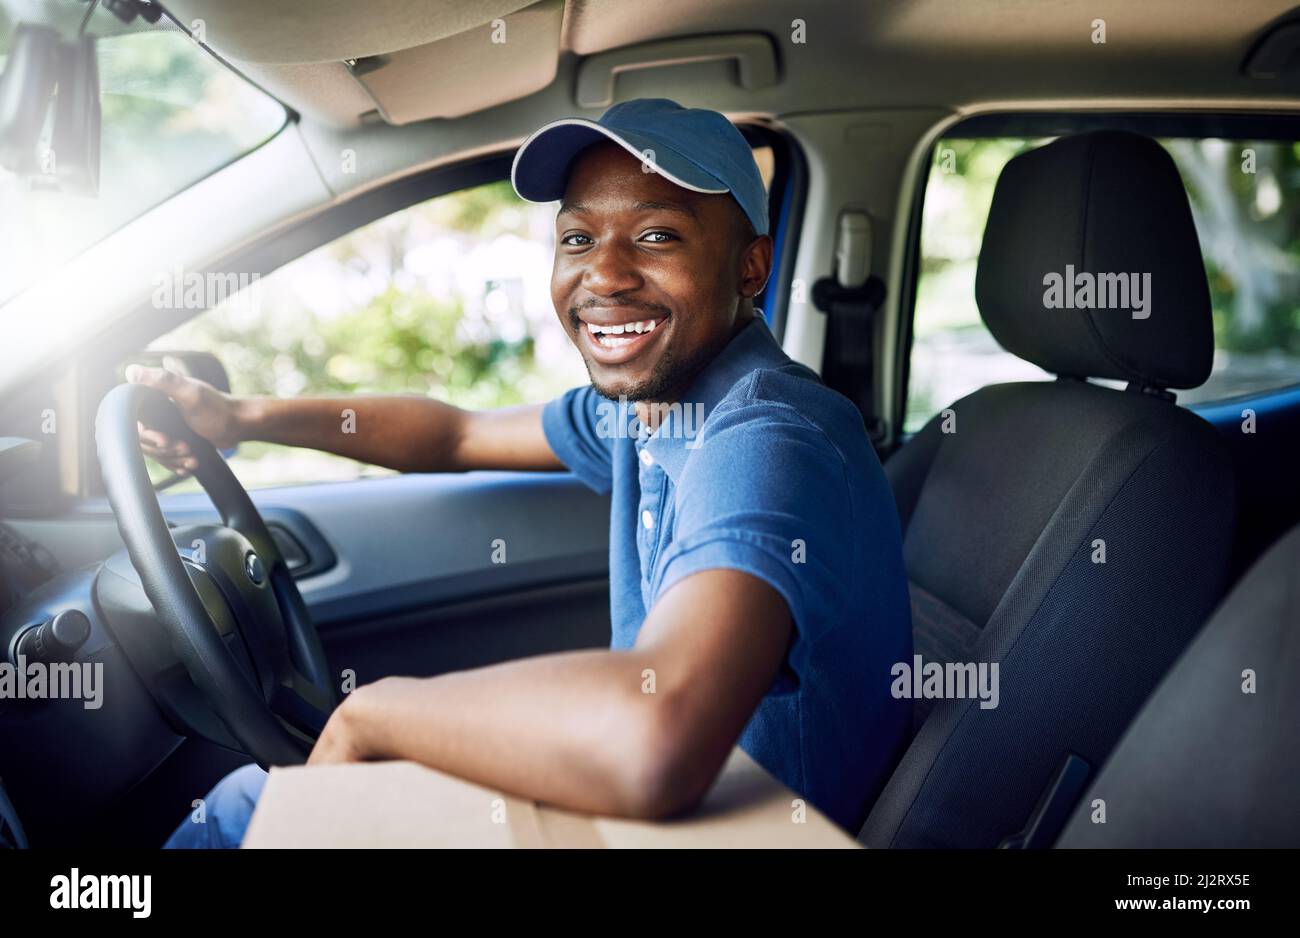 Im a modo mio. Ritratto di un giovane postale che lavora seduto in macchina durante una consegna. Foto Stock